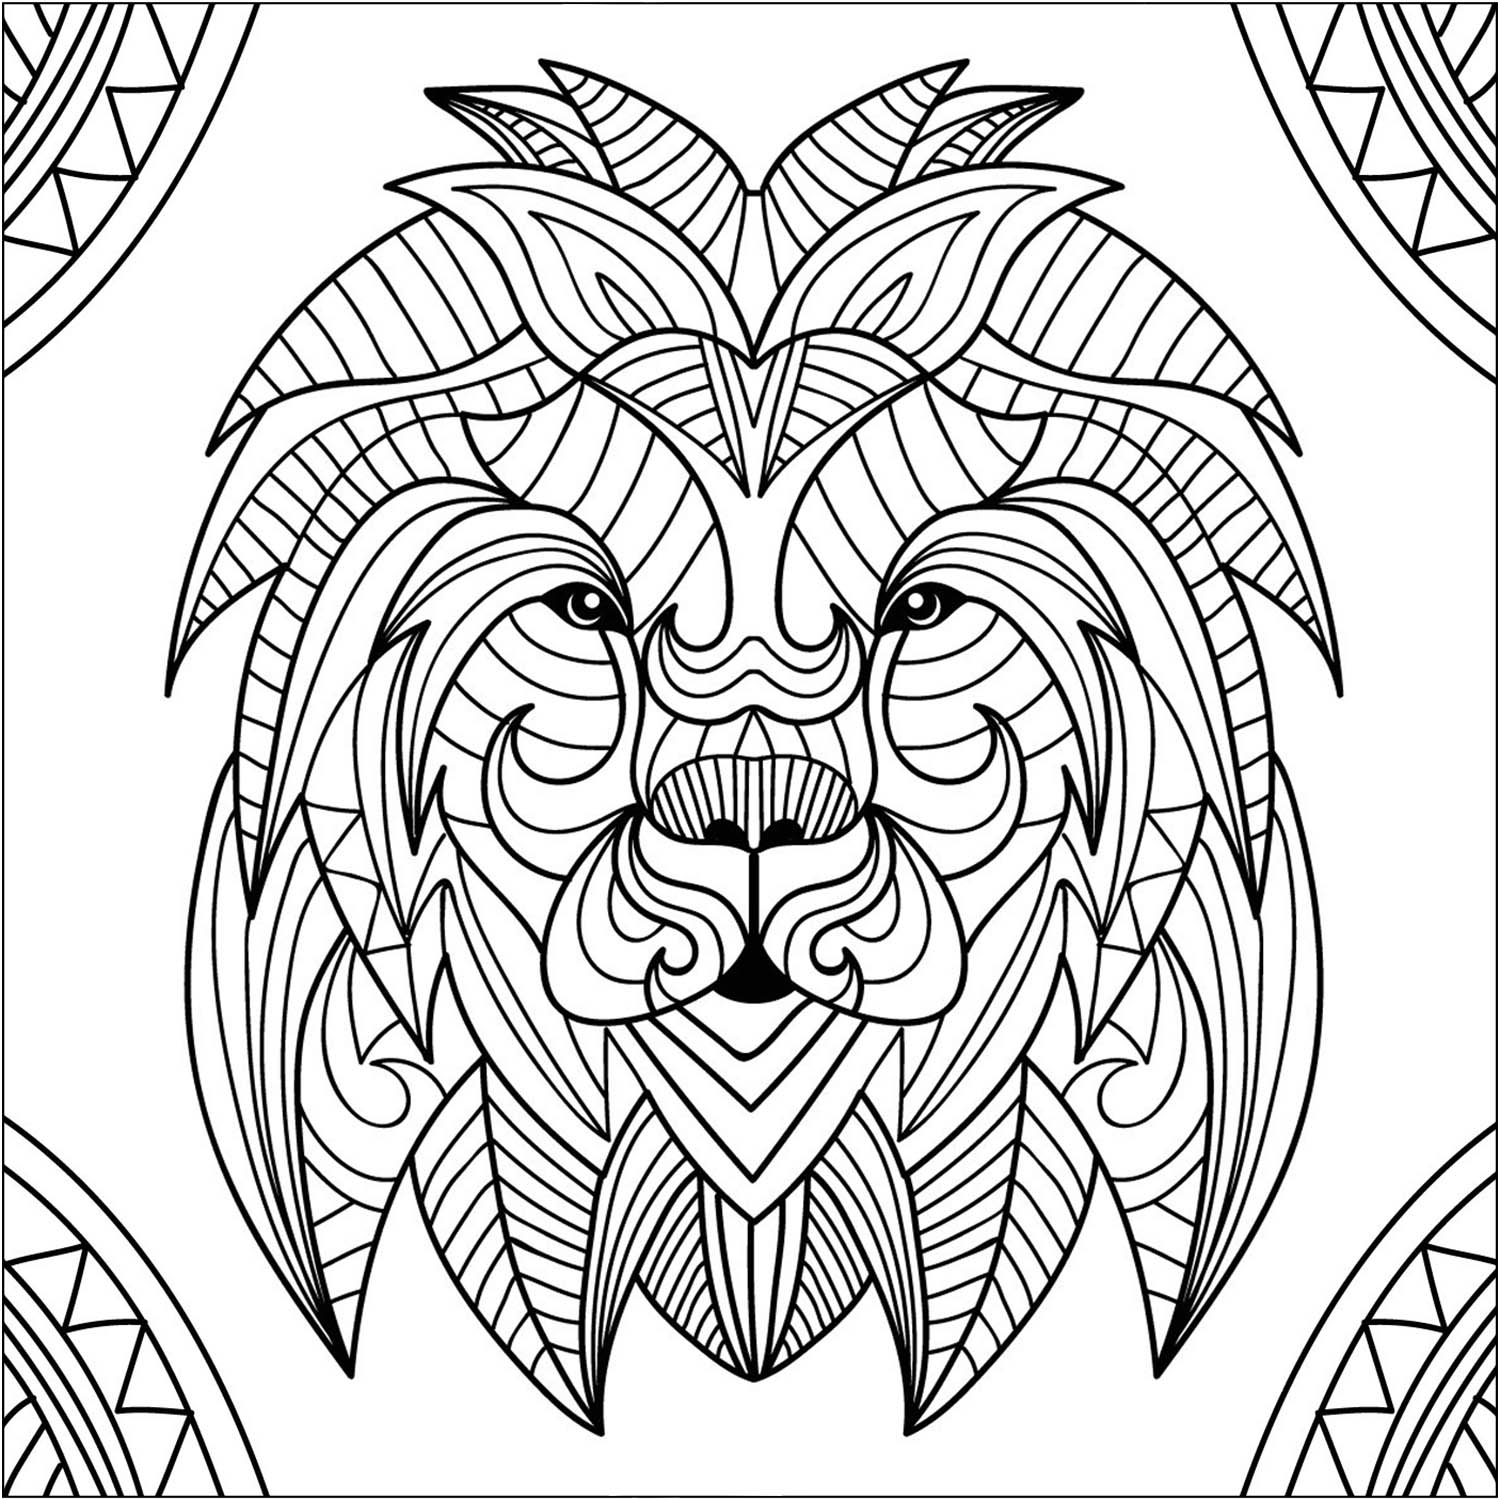 Una bonita cabeza de León en estilo mandala, con el fondo